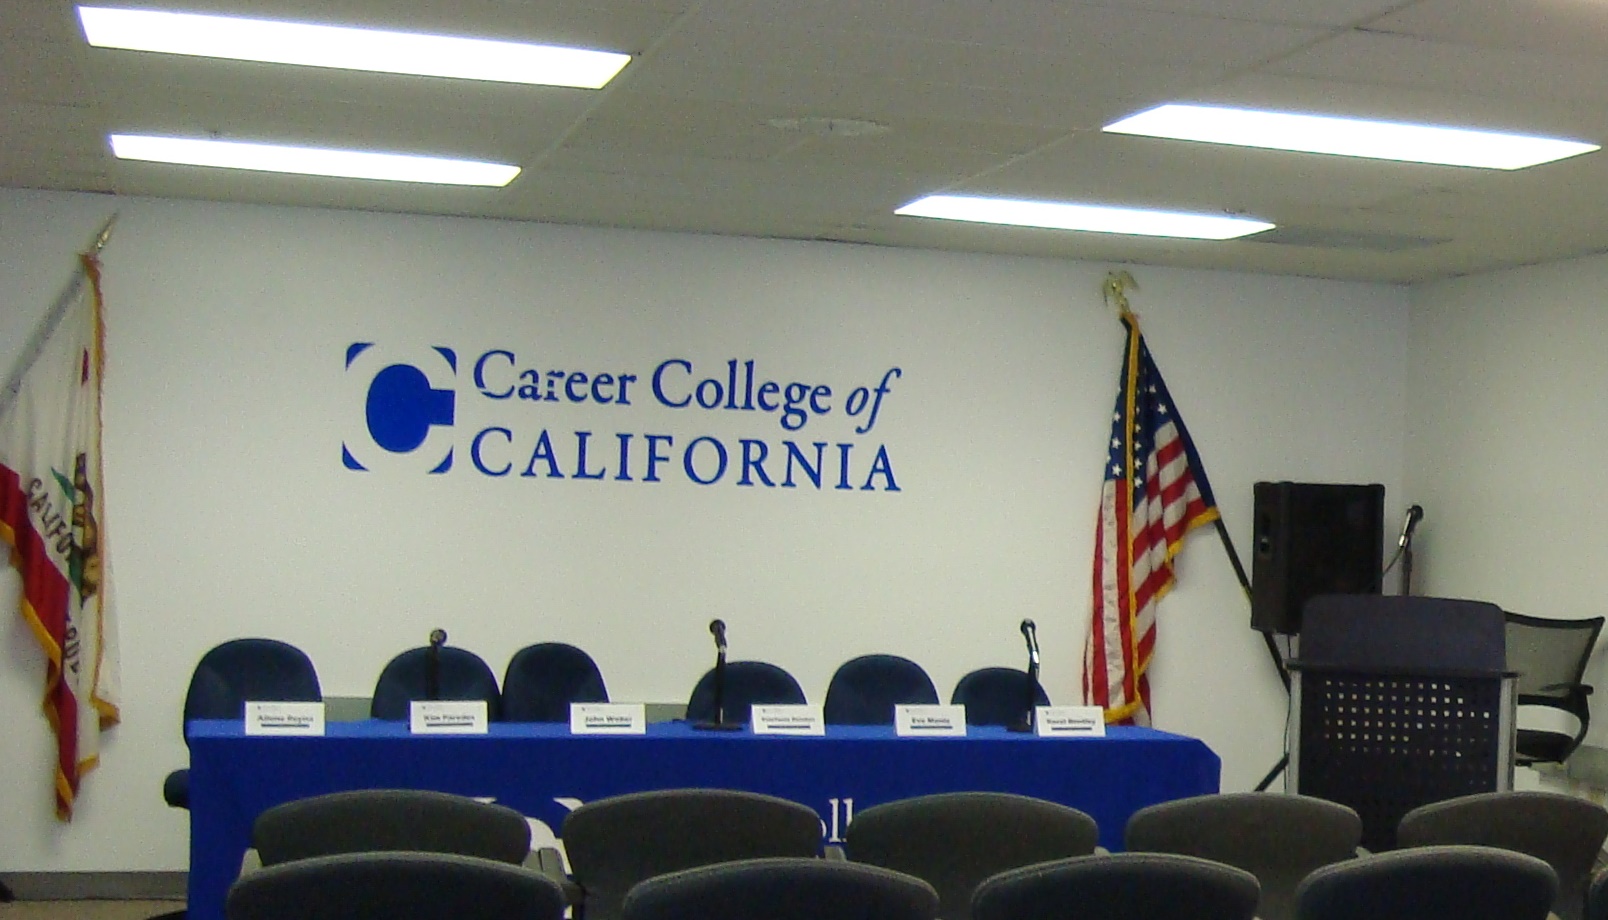 Career College of California